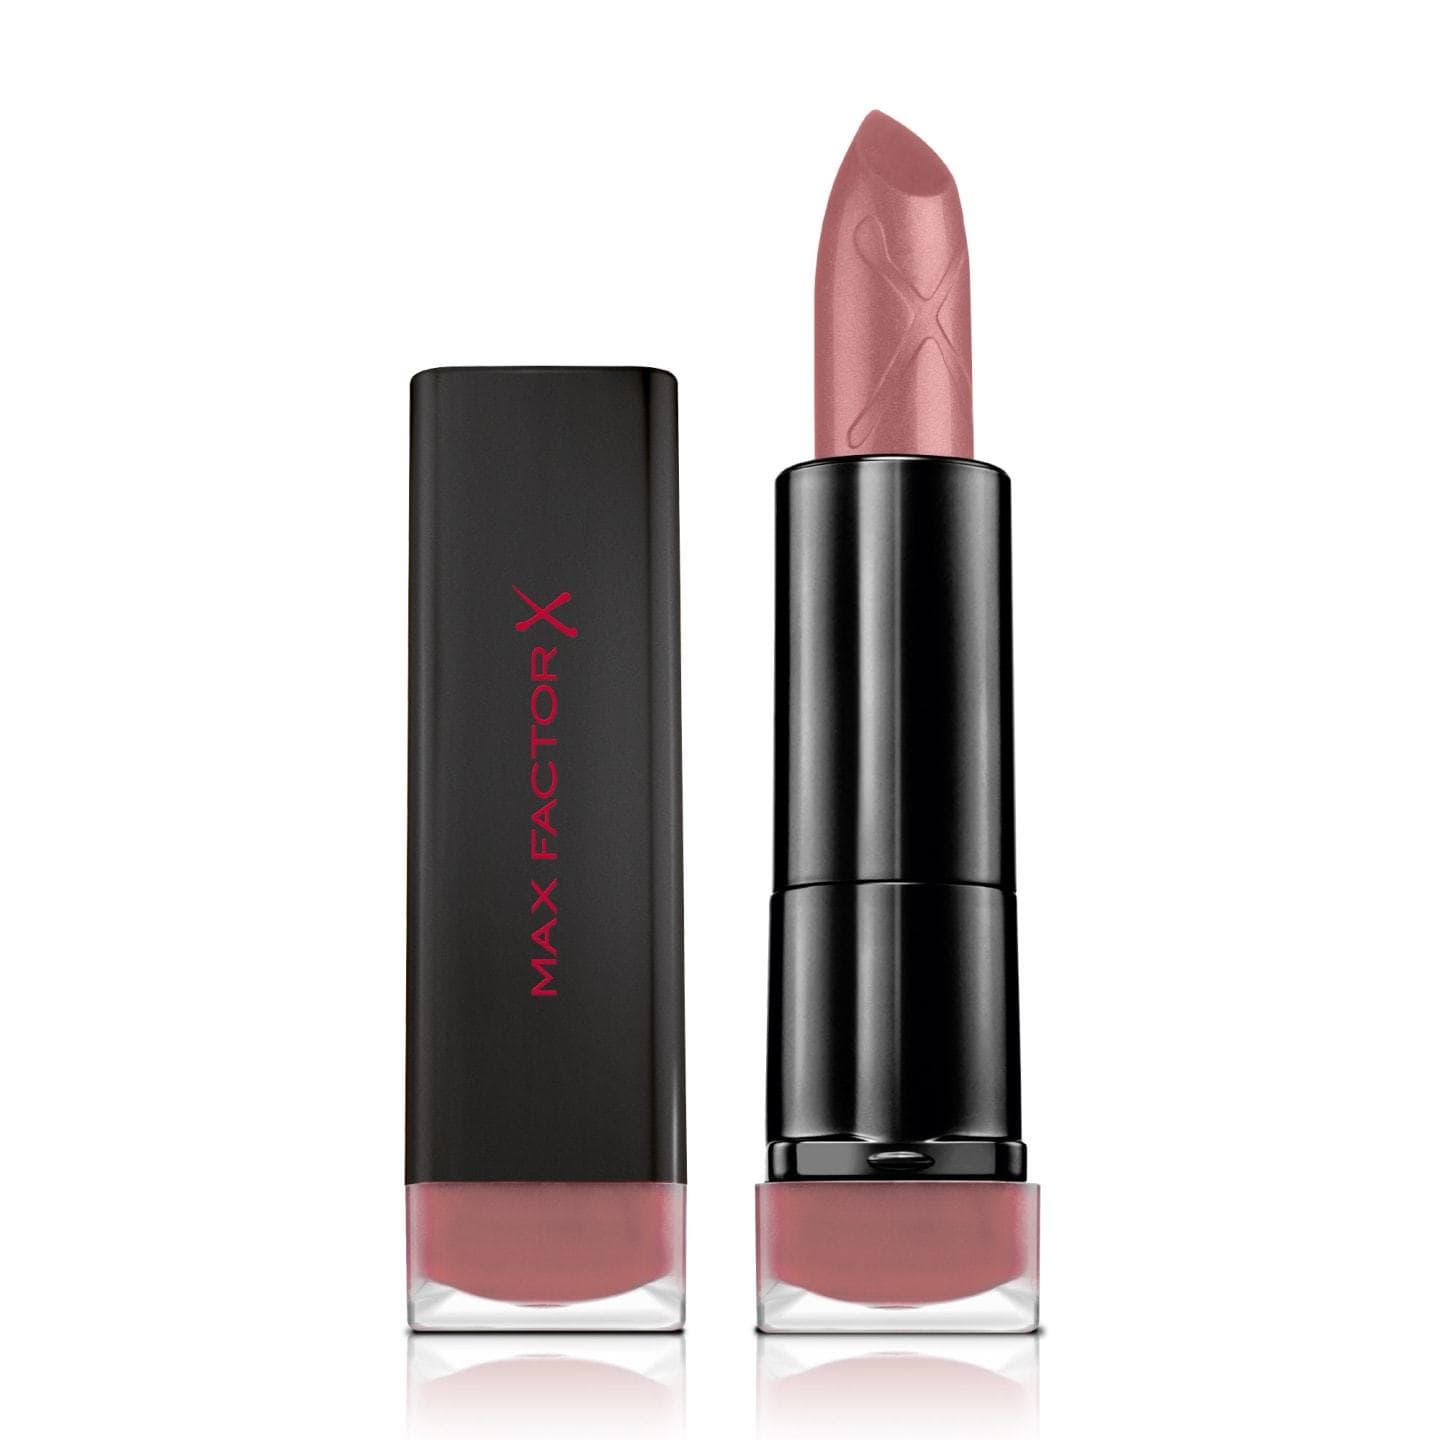 Max Factor Velvet Matte Lipsticks - Give Us Beauty